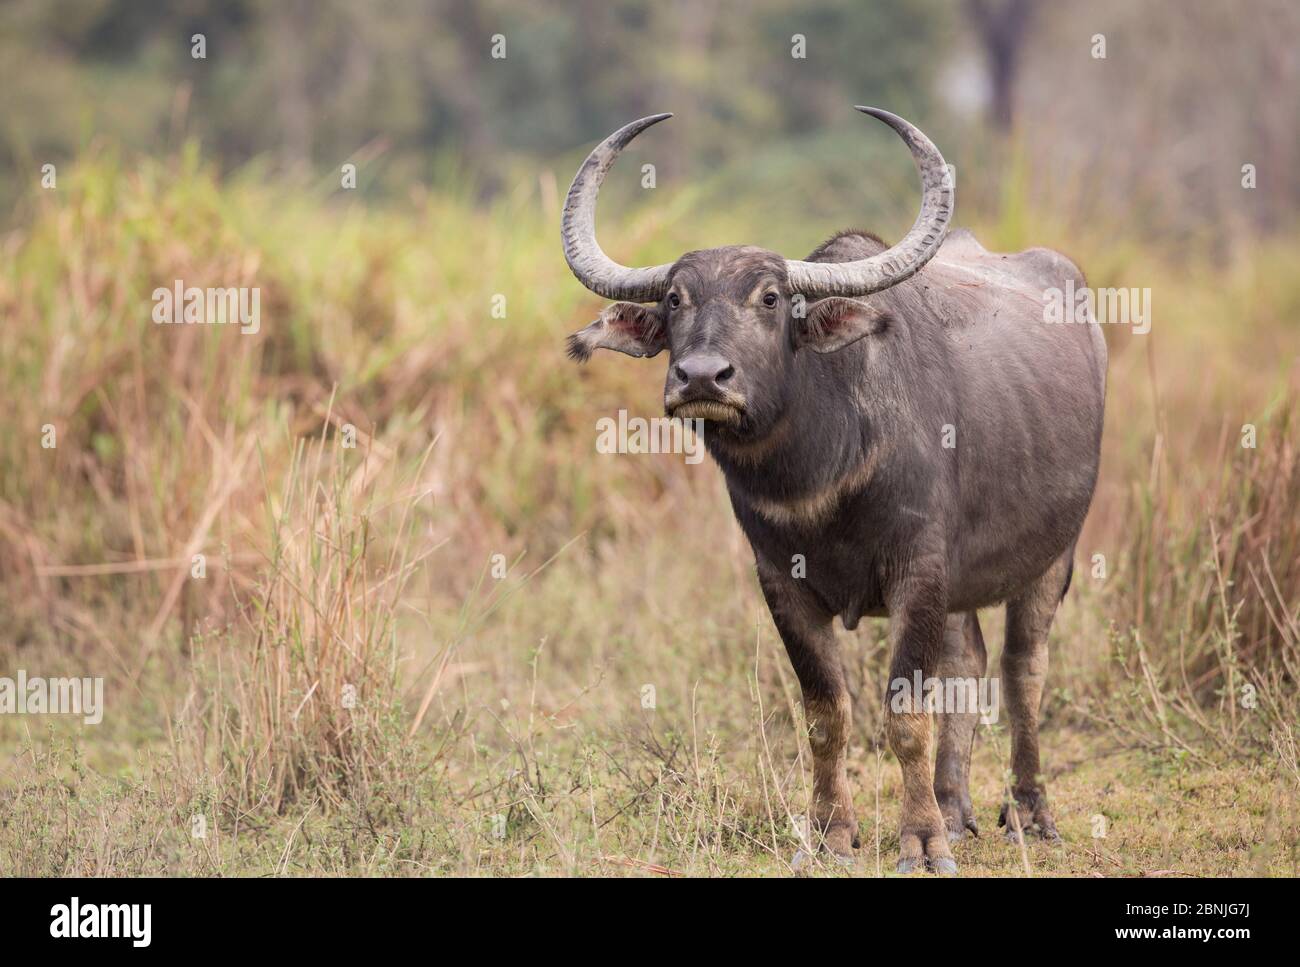 Asiatic wild buffalo  (Bubalus arnee) portrait of female. Kaziranga National Park, India. Stock Photo